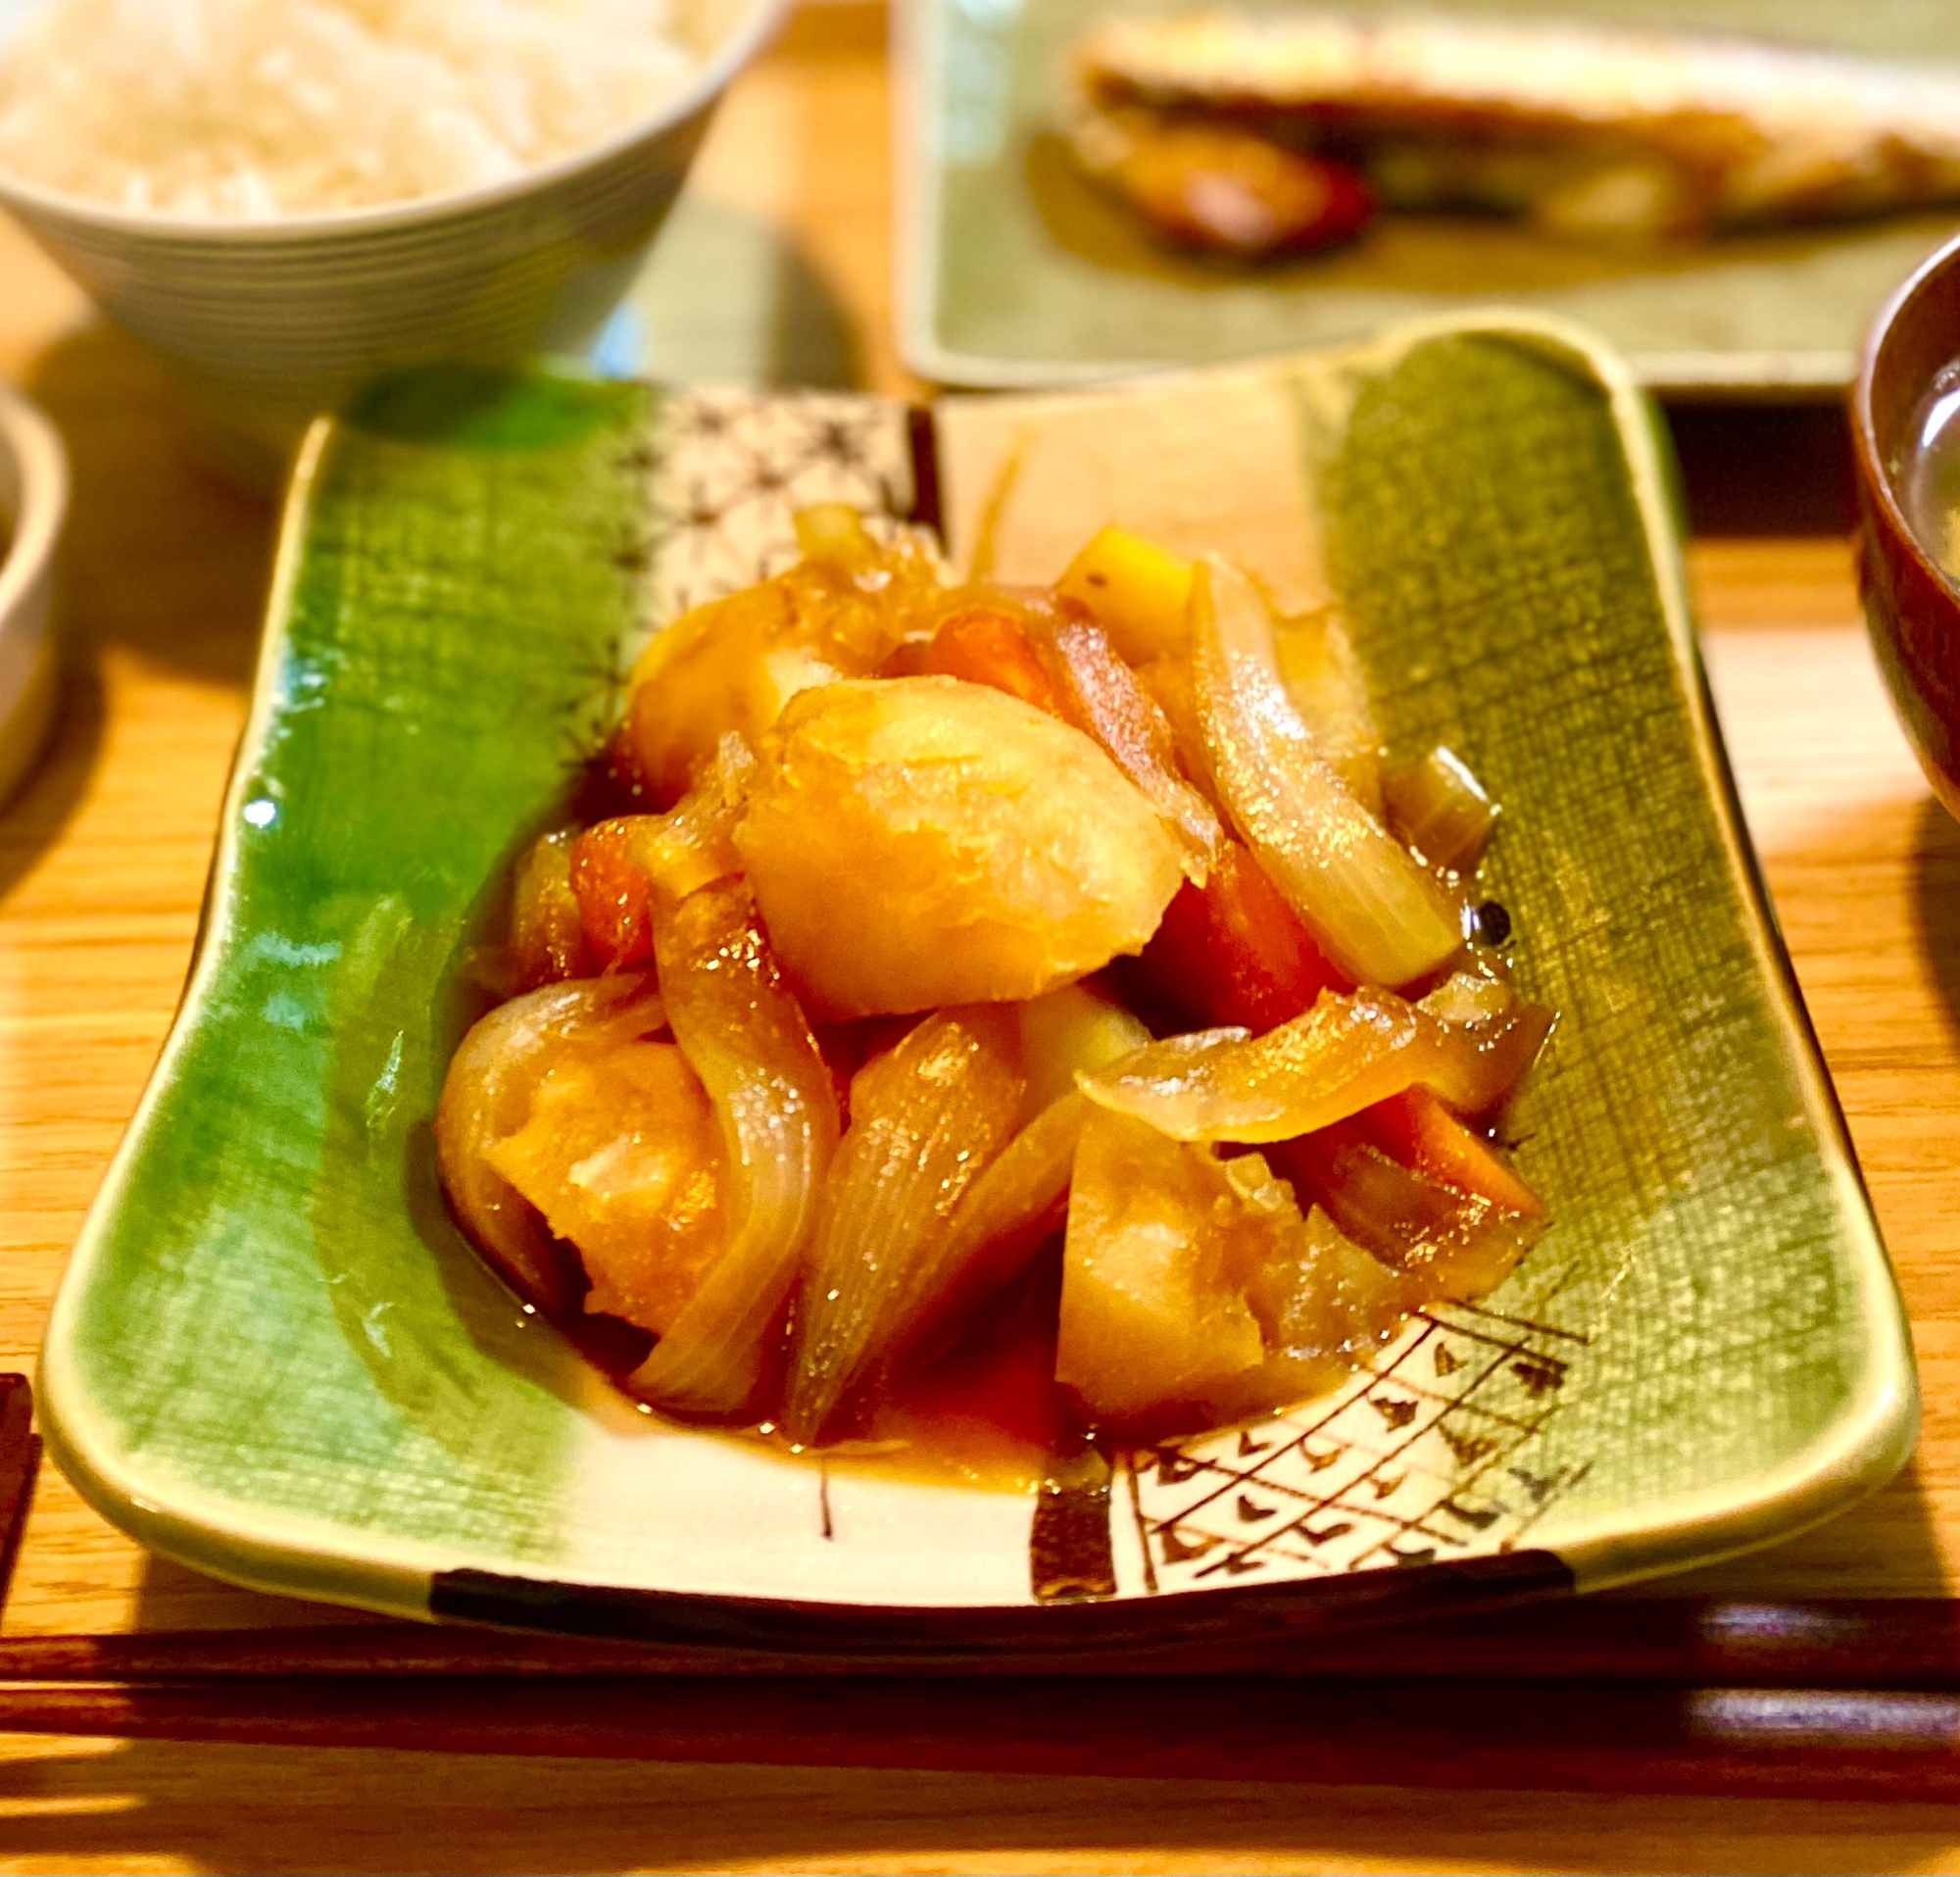 じゃがいも、にんじん、玉ねぎの煮もの【和食・副菜】